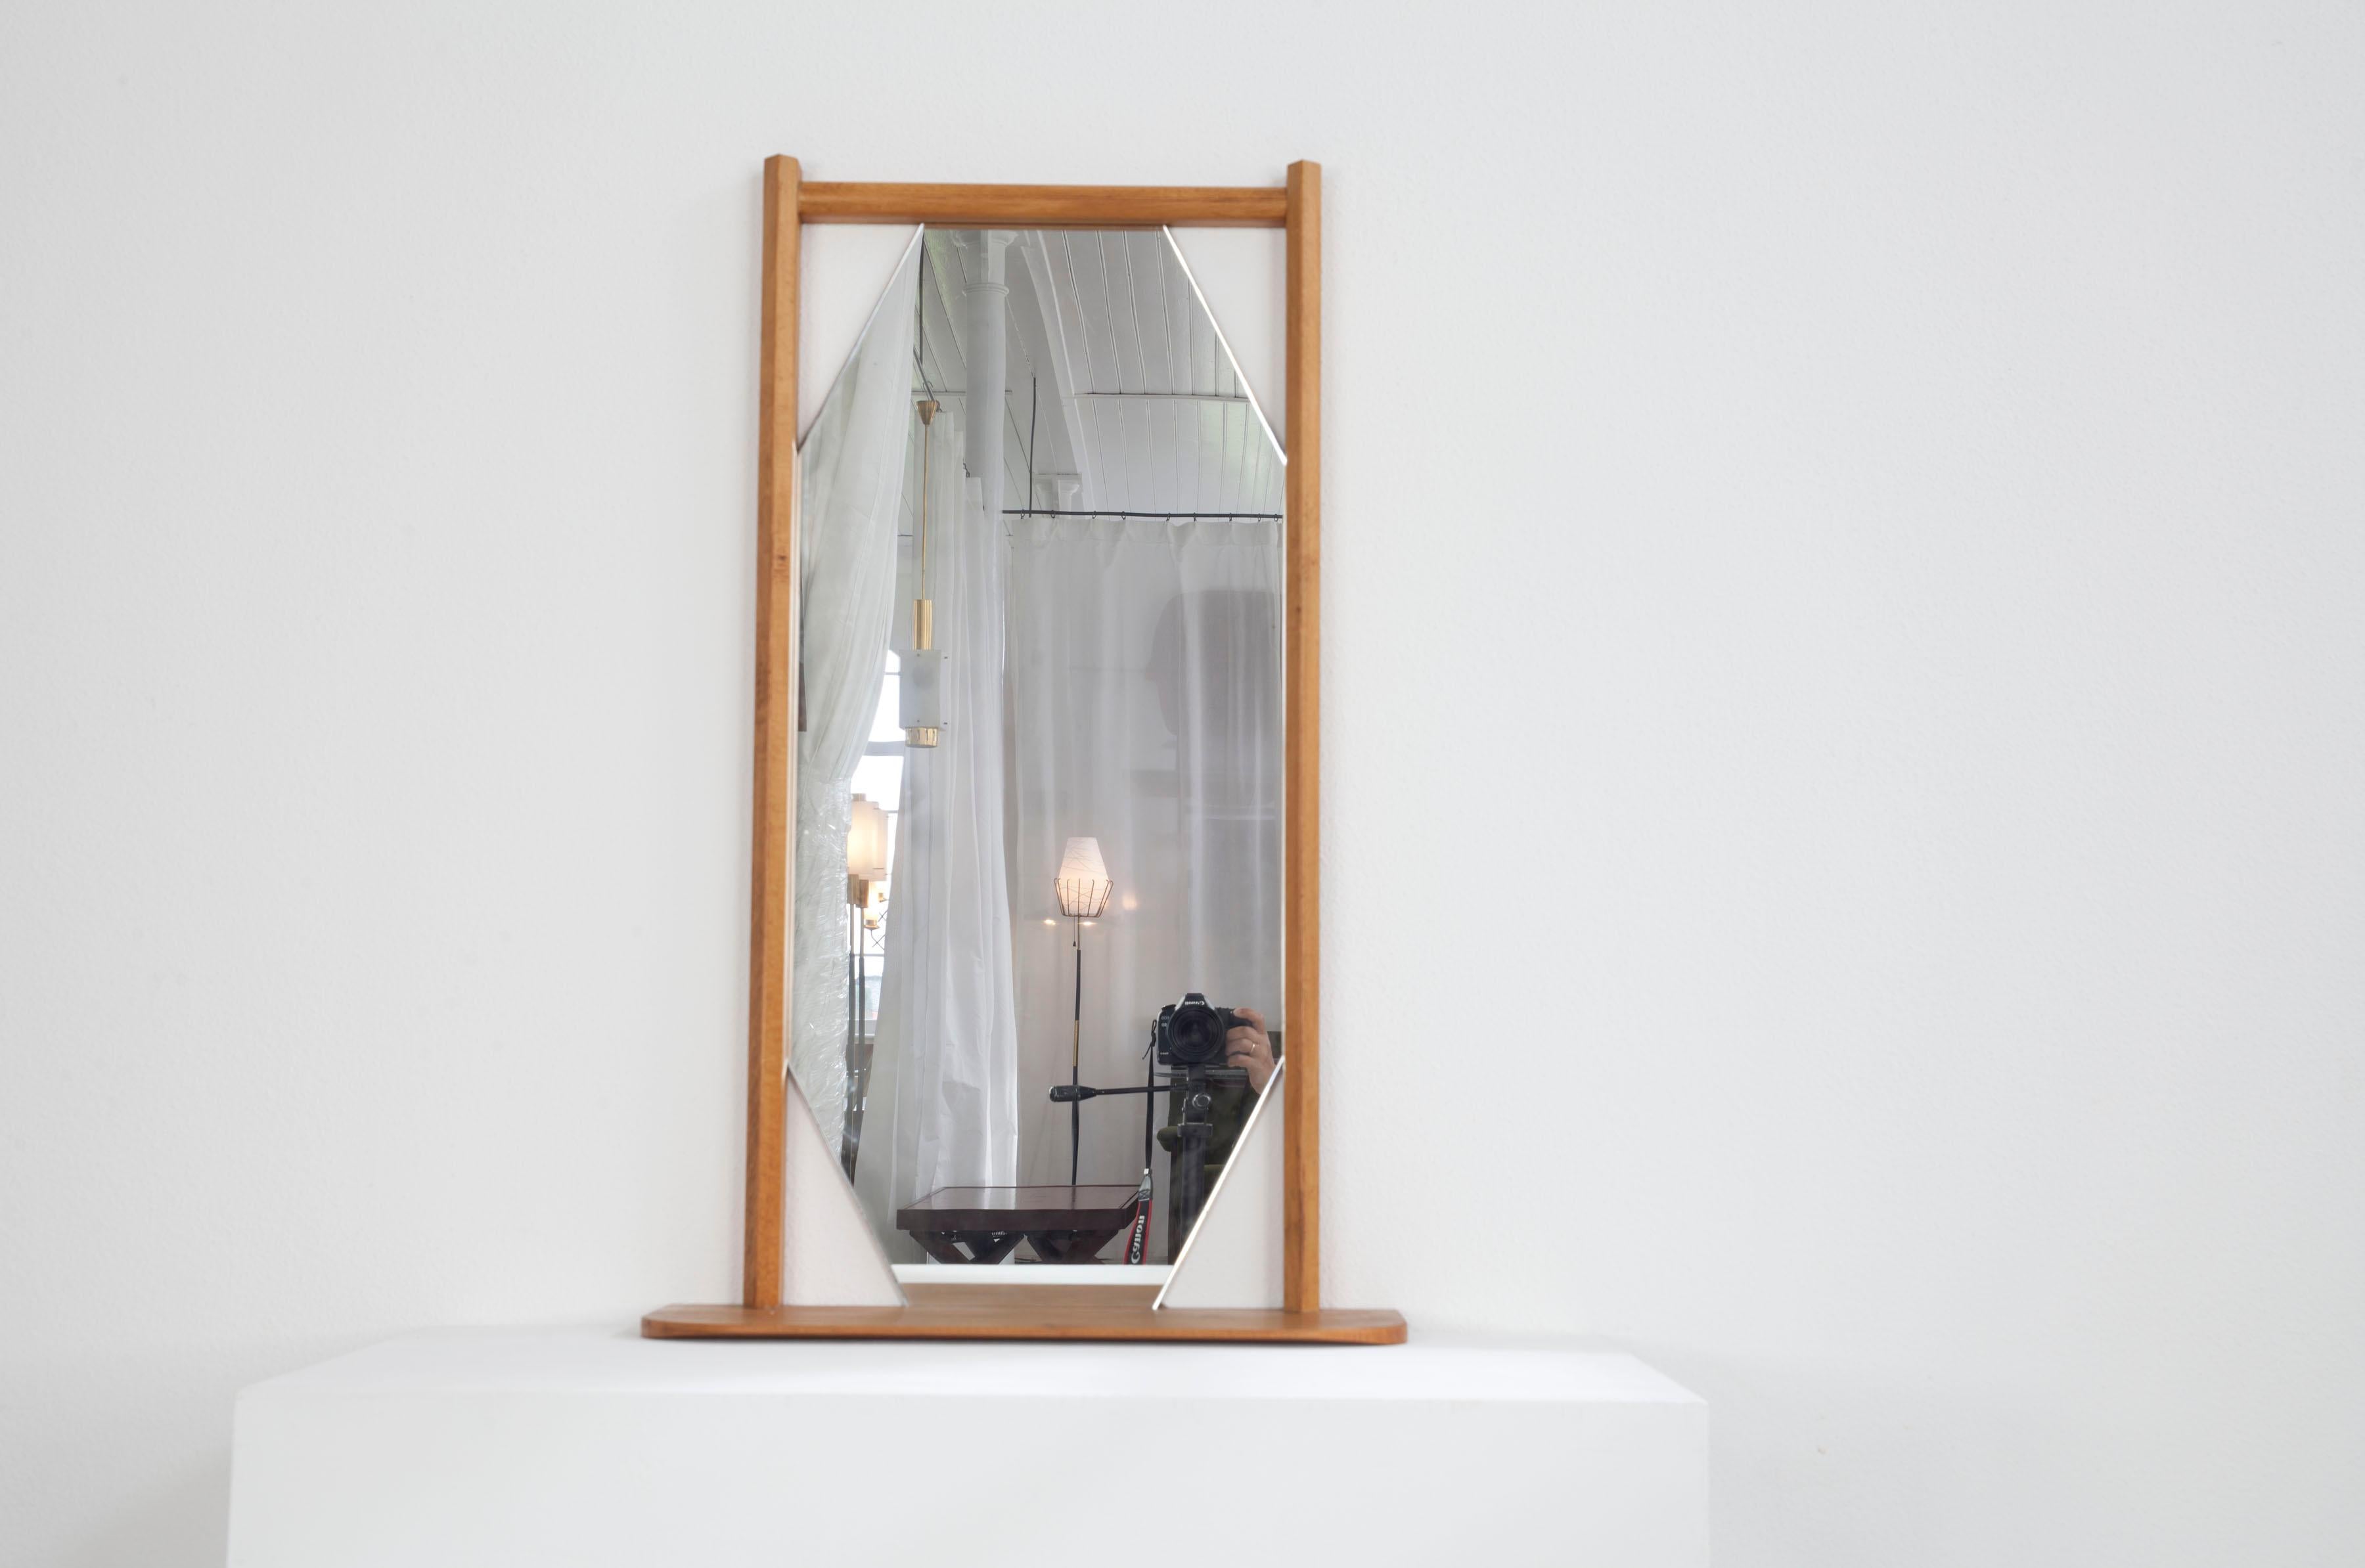 Ce miroir mural italien date des années 60. Le miroir lui-même a la forme d'un hexagone allongé. Le cadre en bois de hêtre, quant à lui, est rectangulaire. Au bas du cadre se trouve une petite étagère pratique sur laquelle on peut poser de petits